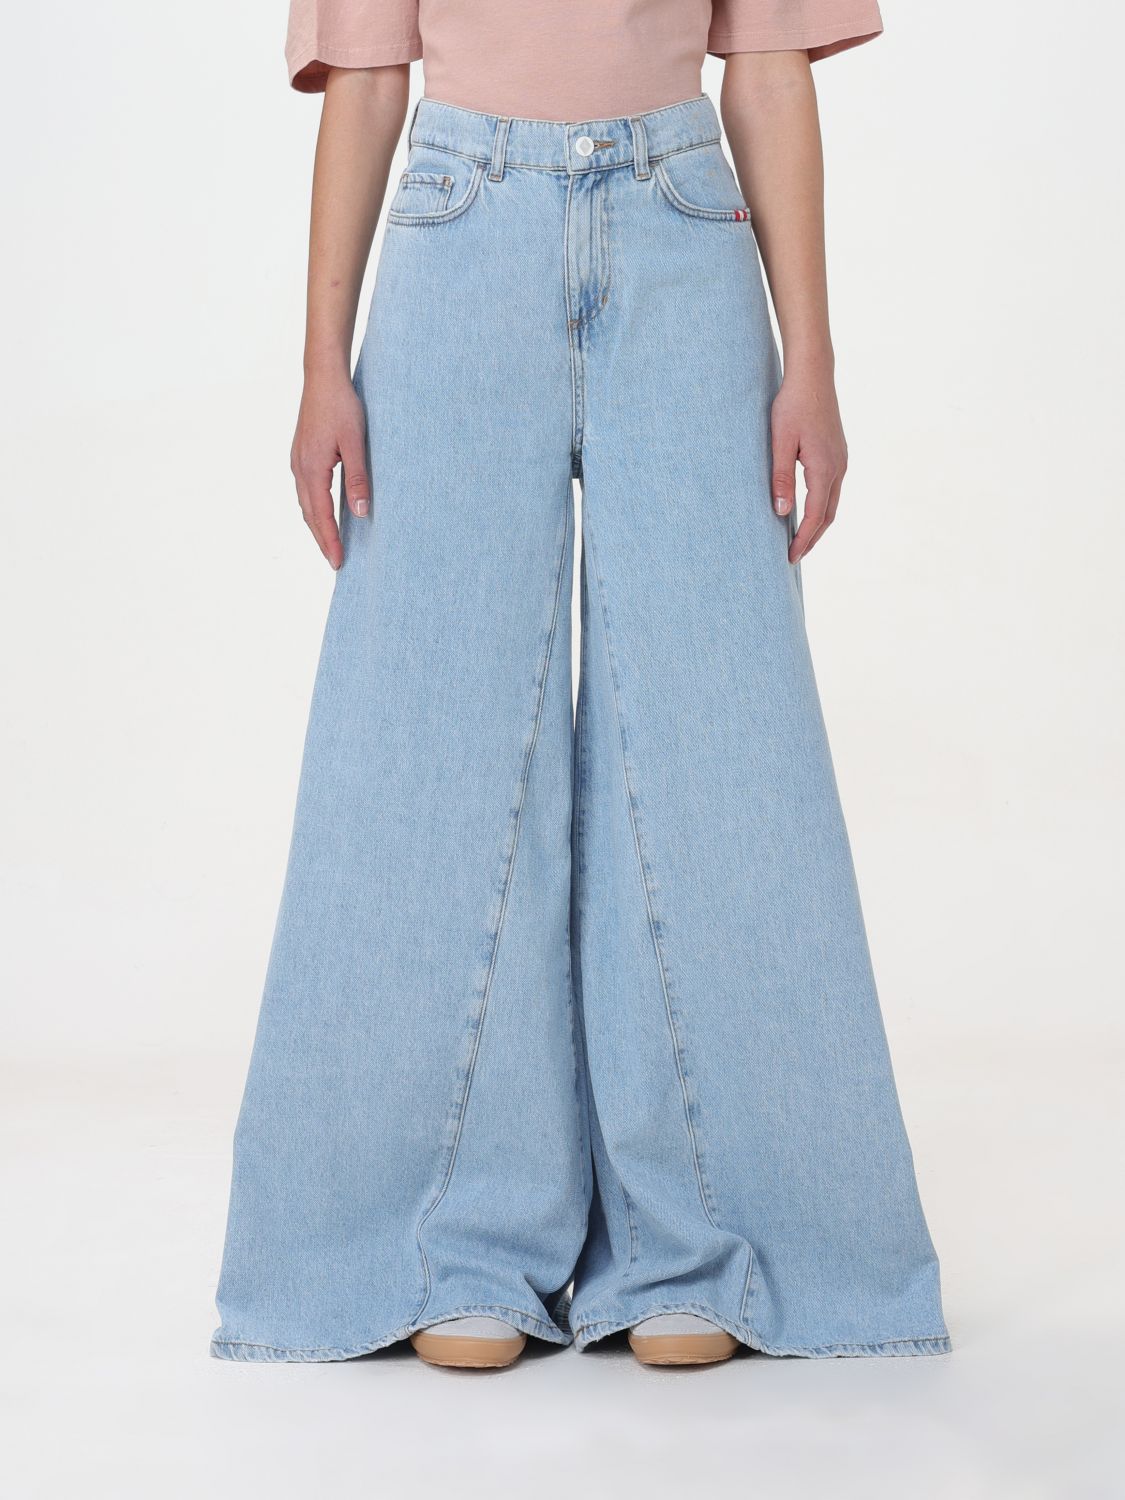 jeans amish woman colour denim